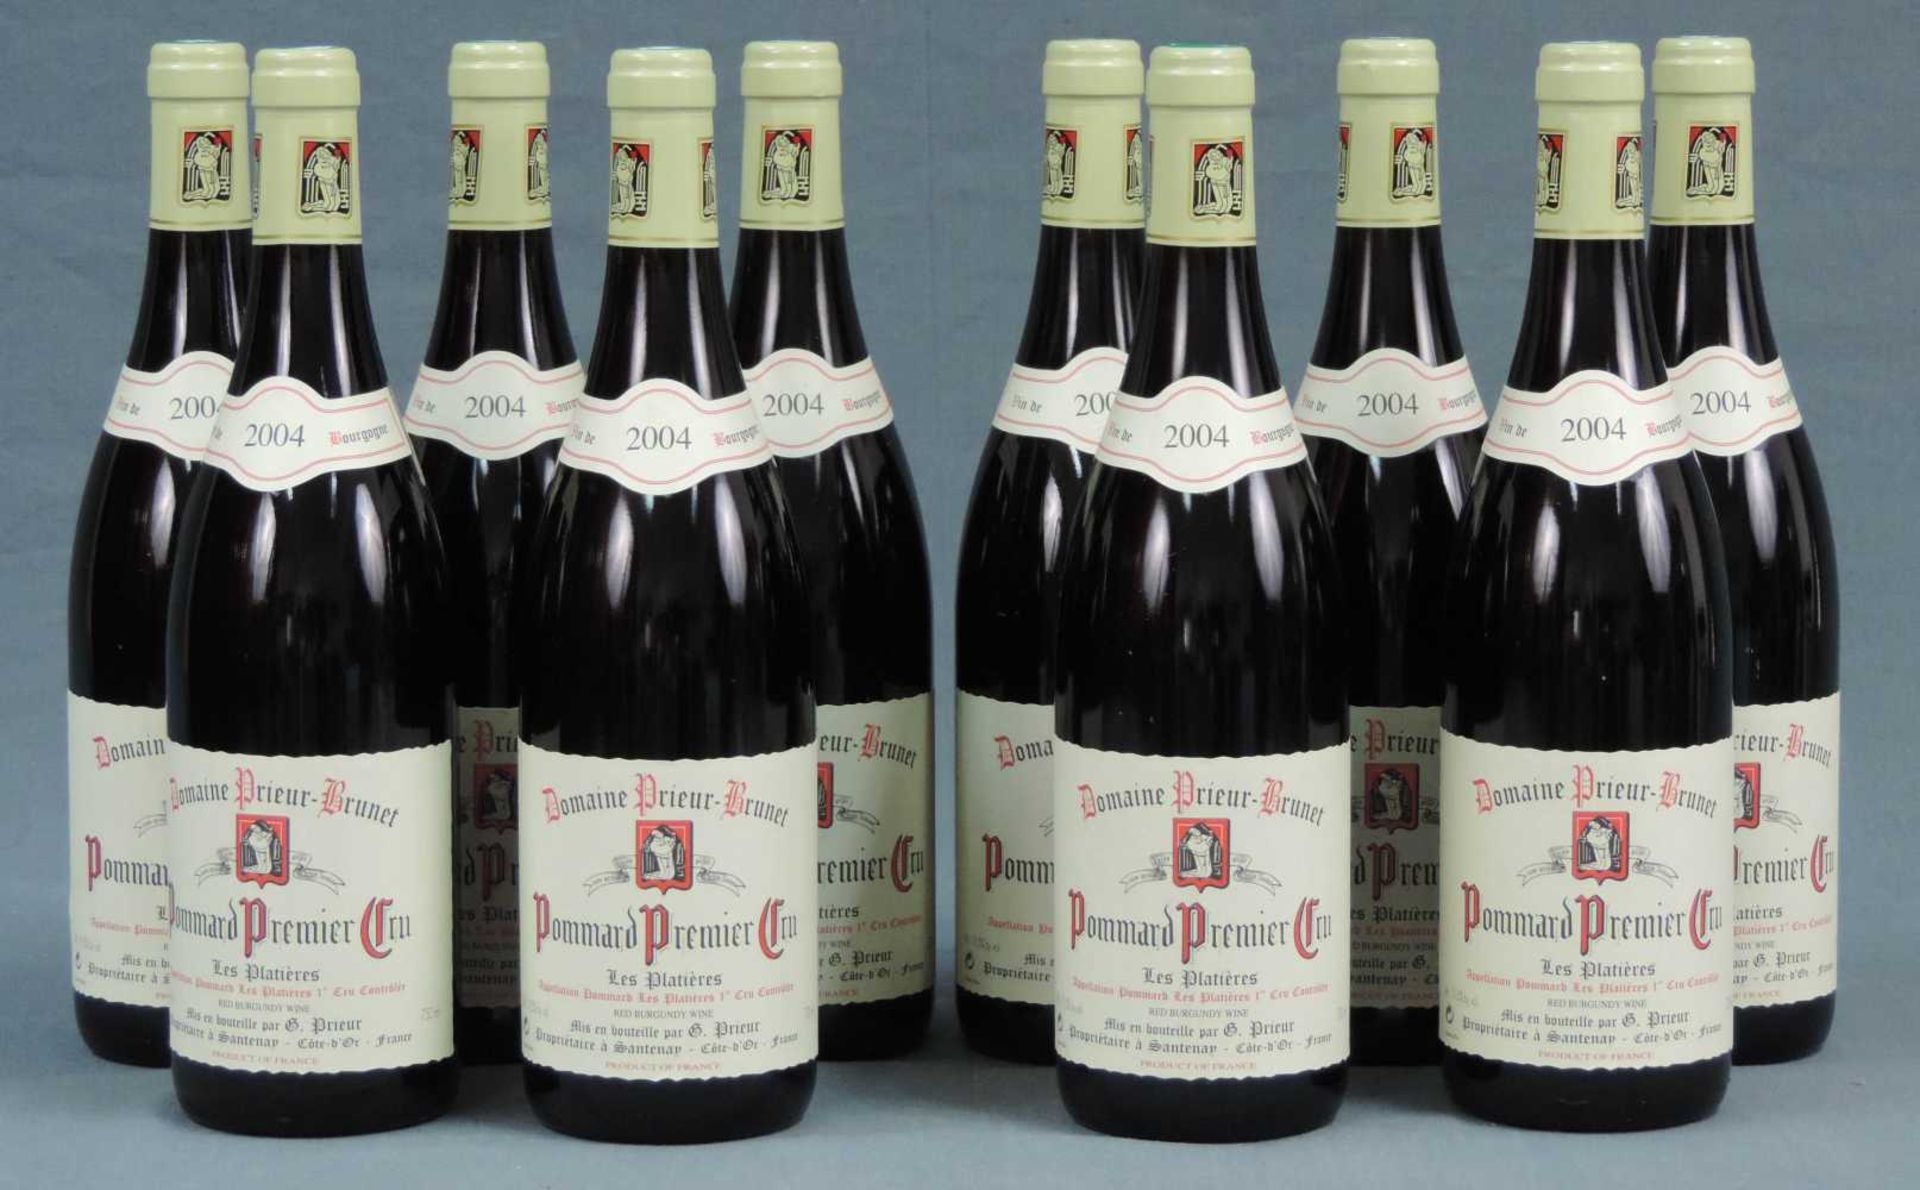 2004 Domaine Prieur - Brunet, Pommard Premier Cru Les Platieres, France. 10 Flaschen, 750 ml,